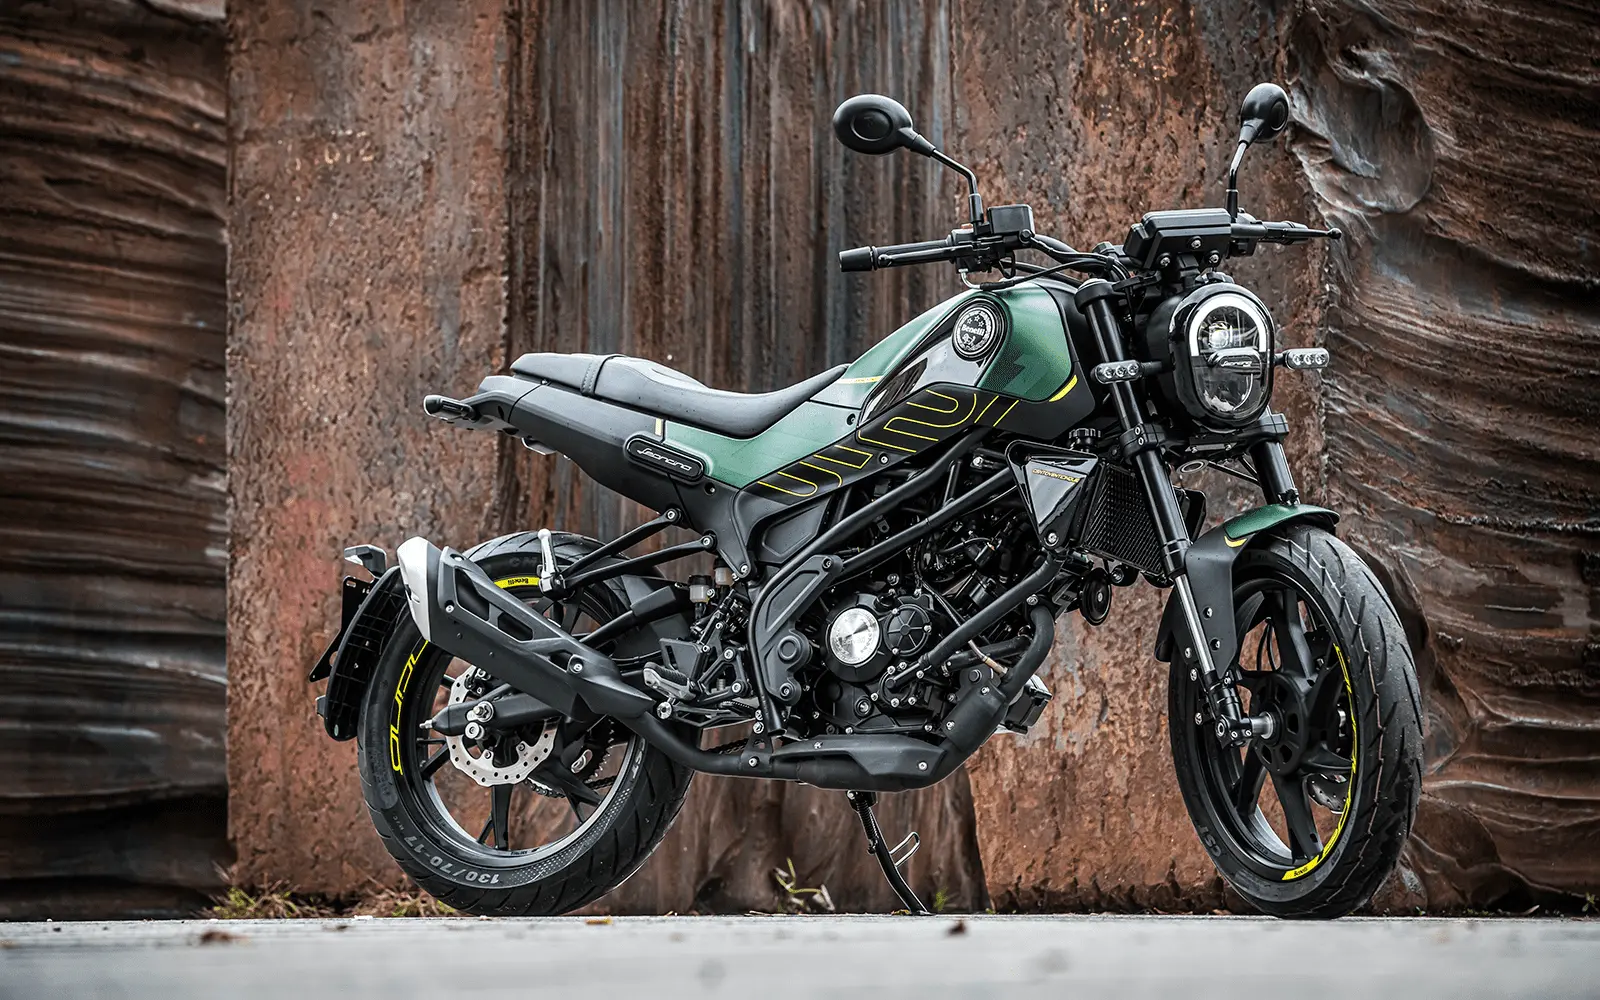 motos tarragona - concesionario oficial benelli y multimarca - Qué tal es la marca de motos Benelli